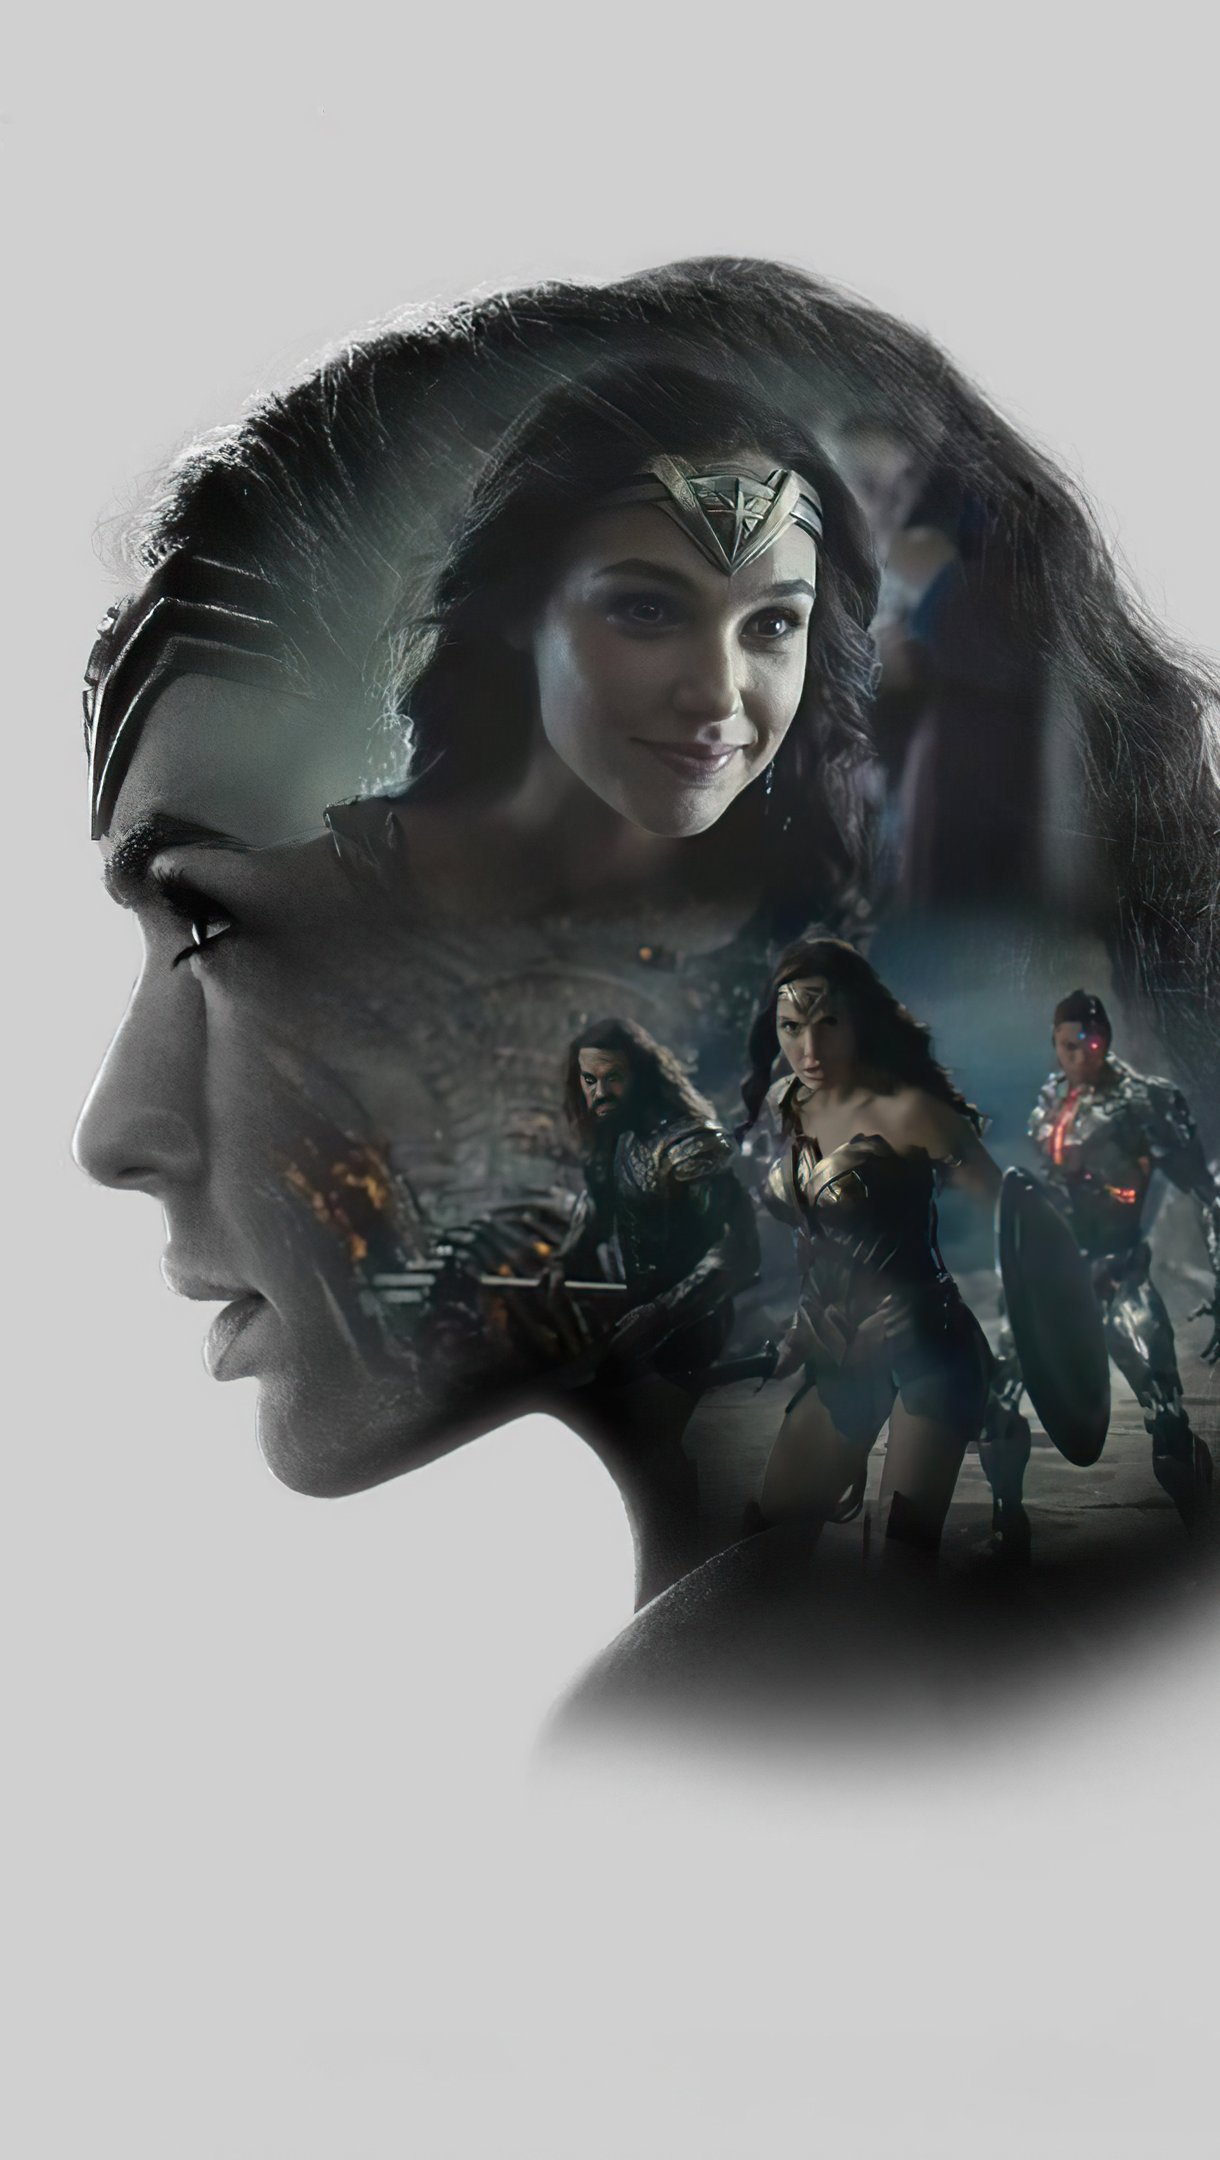 Fondos de pantalla Gal Gadot como Mujer Maravilla Zack Snyder's Justice League Minimalista Vertical